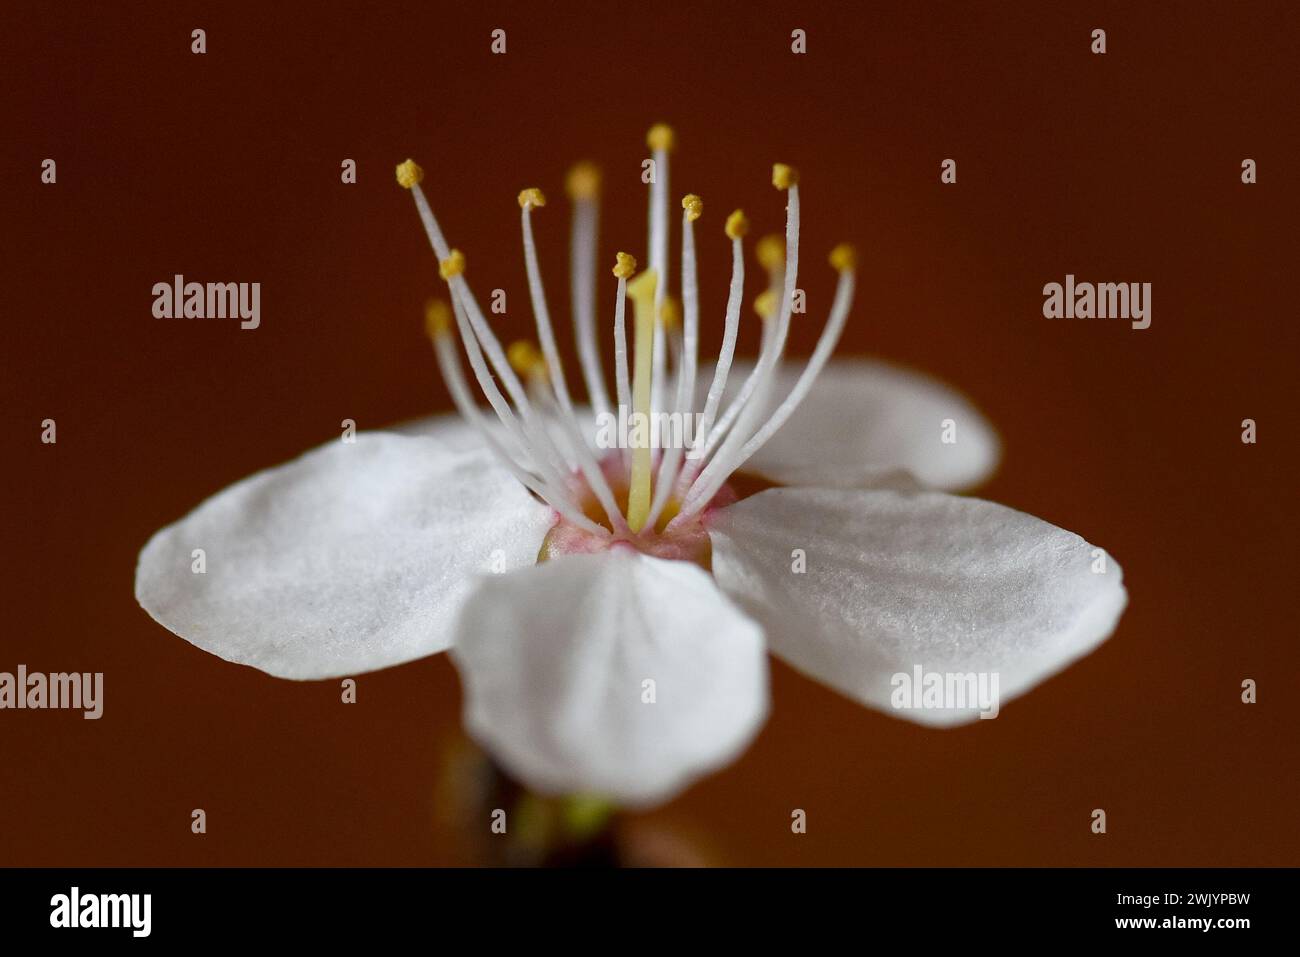 Ein Kirschpflaumenbaum blüht im Frühling. Makro- oder Nahaufnahme-Foto einer Blume mit selektivem Fokus auf Blütenblättern und Staubblättern. Stockfoto